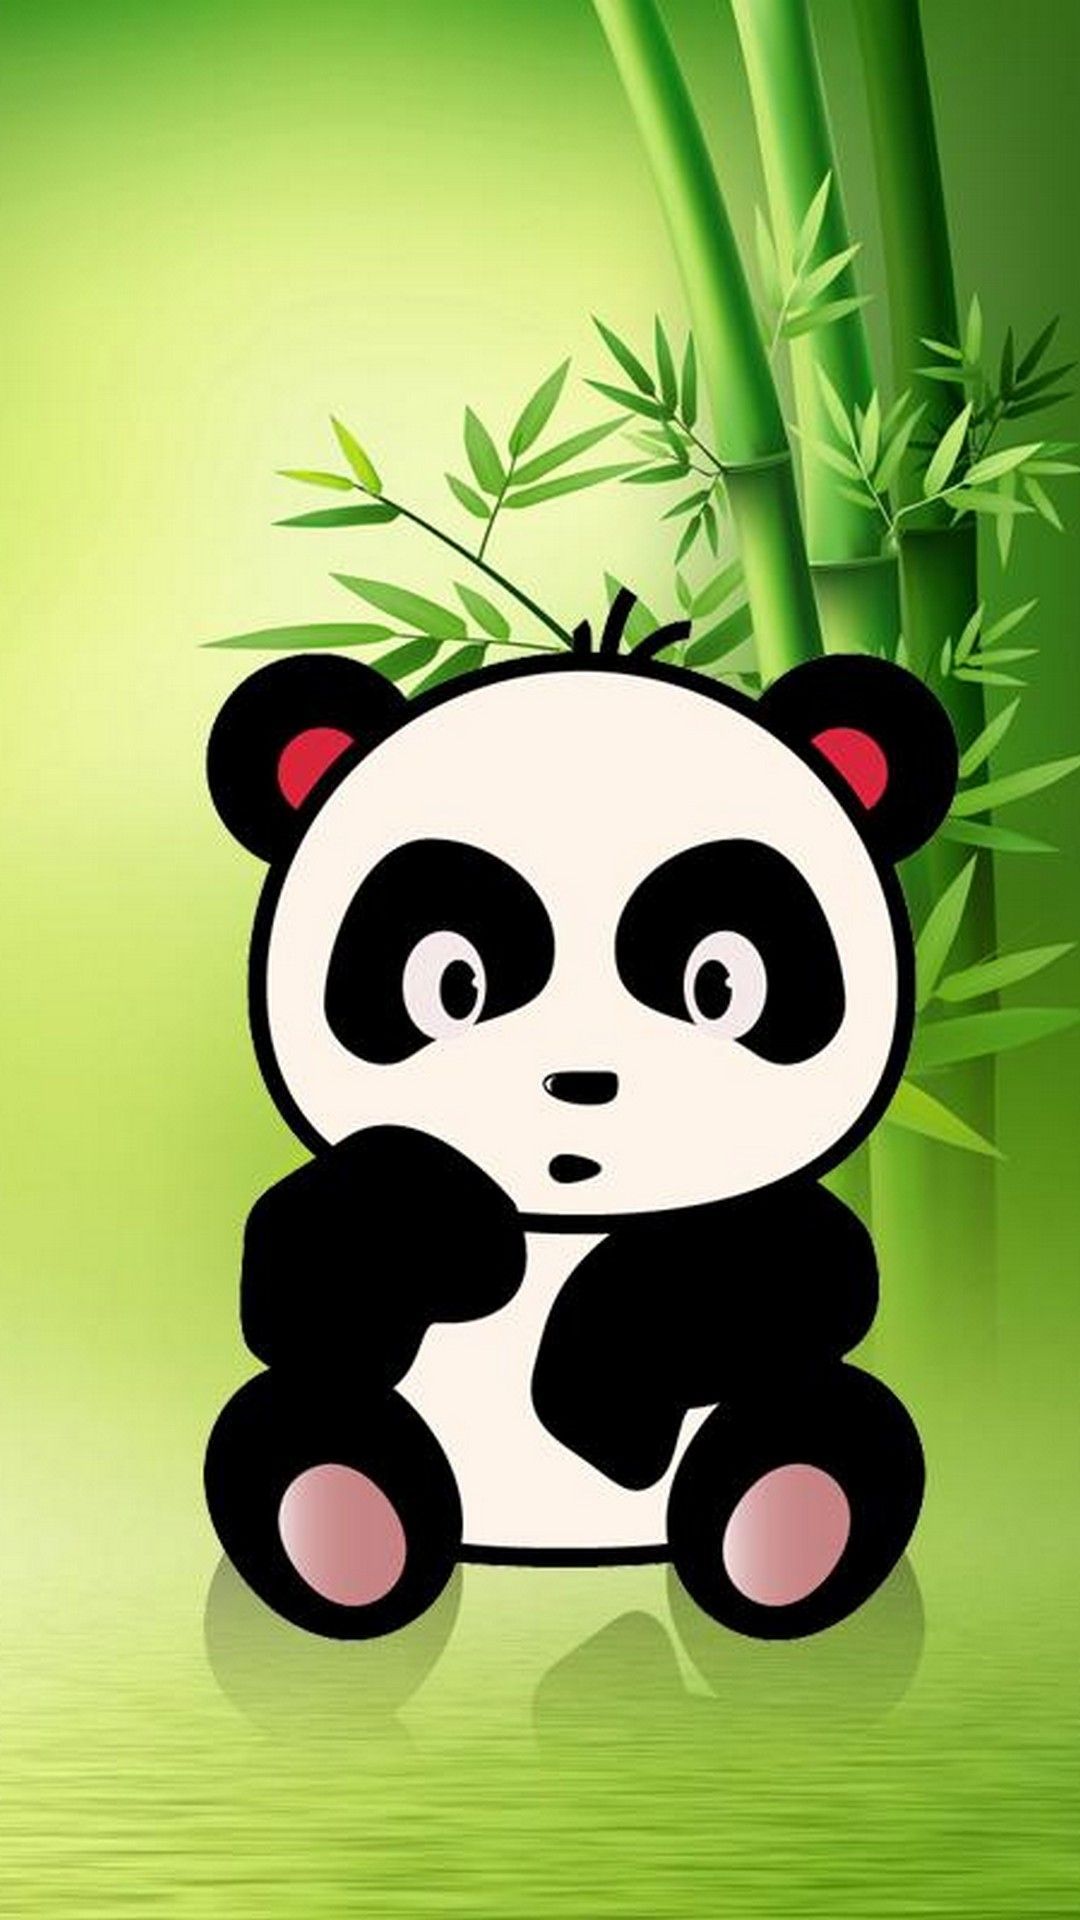 Cute Panda Wallpaper Free Cute Panda Background